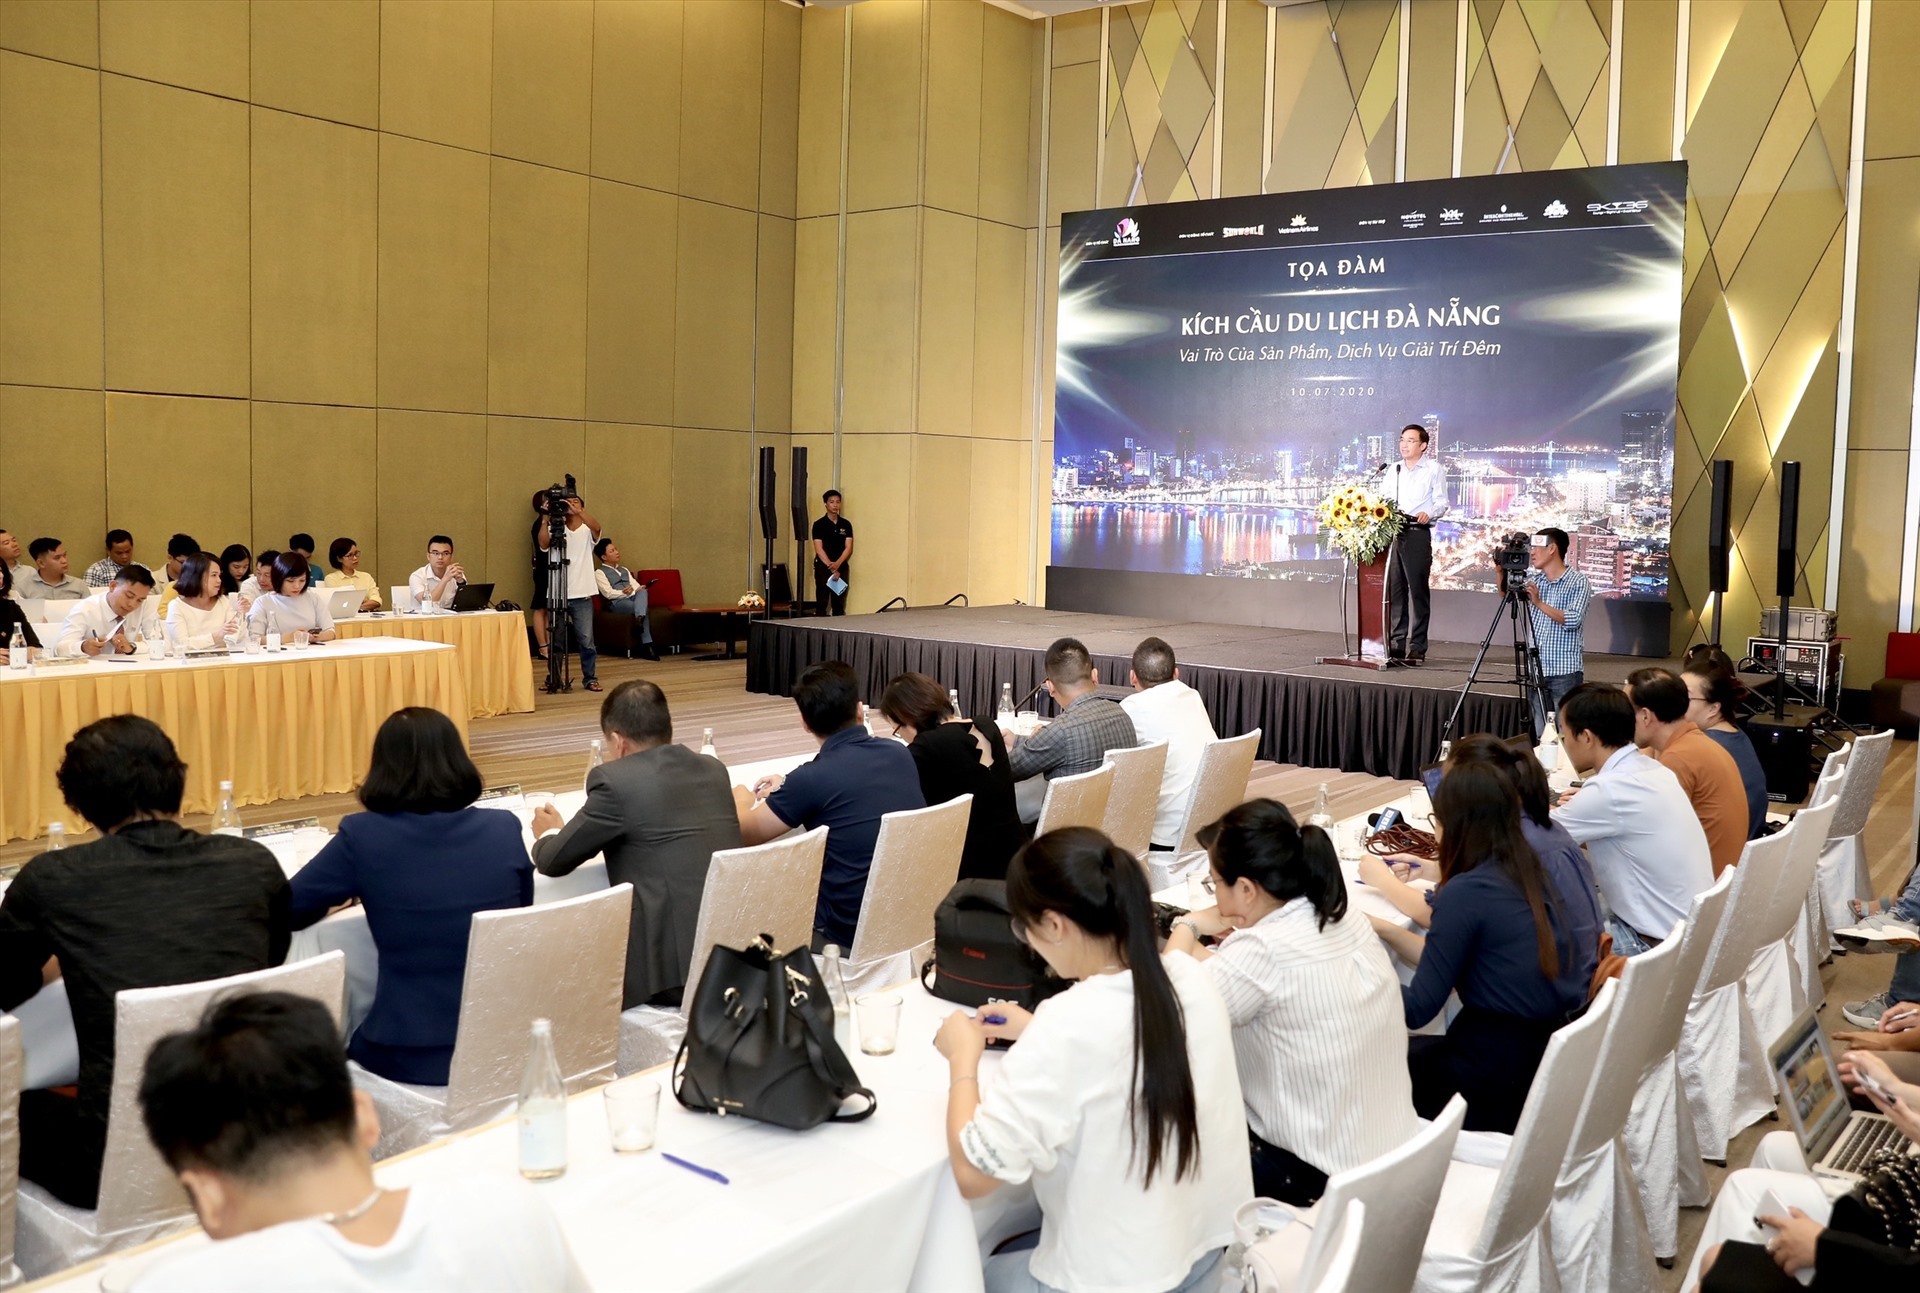 Đó là chia sẻ của ông Vũ Anh Tuấn - Ban Kế hoạch phát triển - VietNam Airlines tại tọa đàm “Kích cầu du lịch Đà Nẵng Vai trò của sản phẩm, dịch vụ giải trí đêm” vừa mới diễn ra.